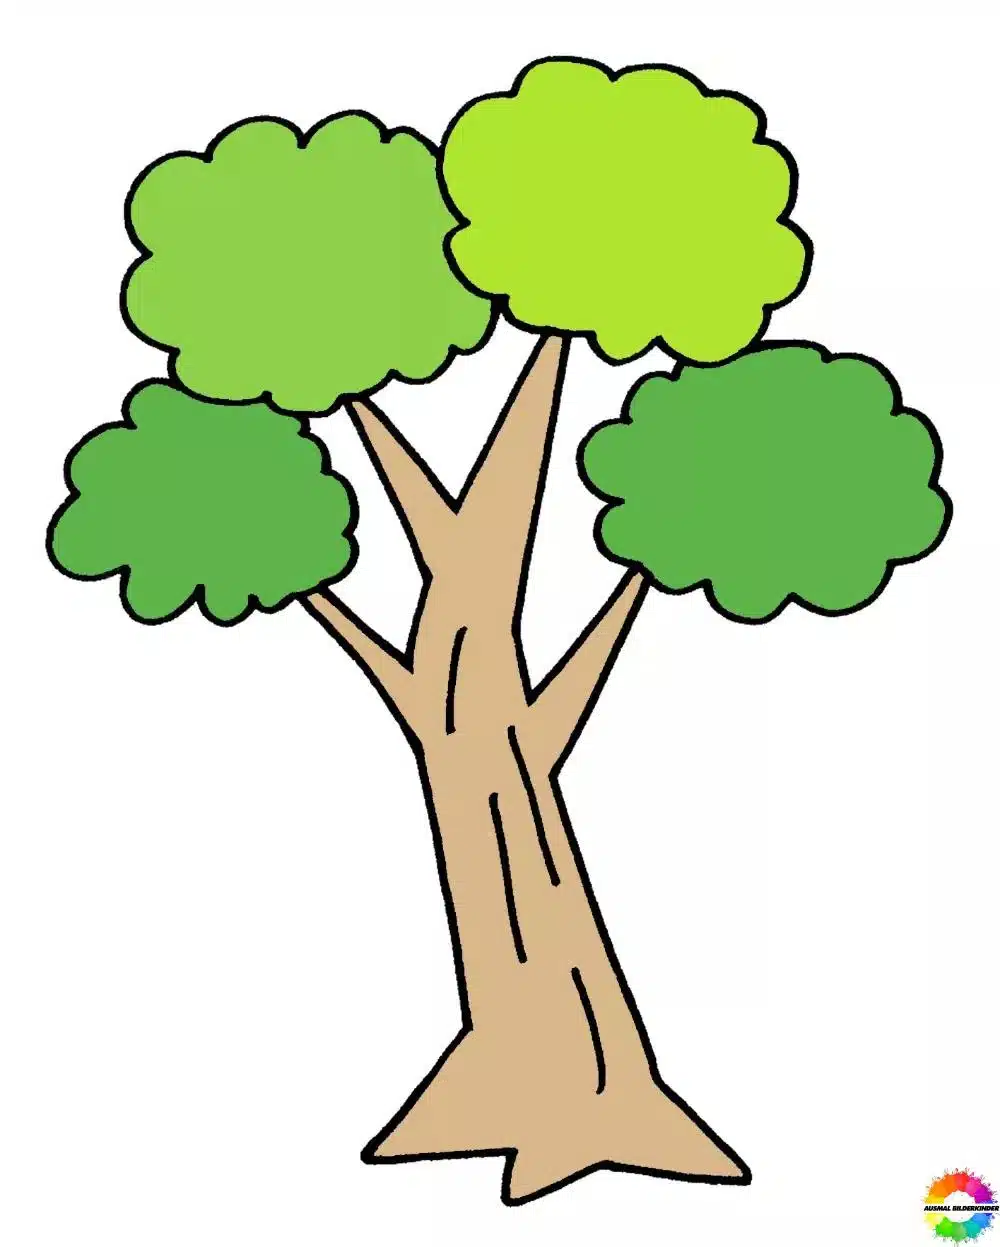 Baum zeichnen einfach - Schritt 10